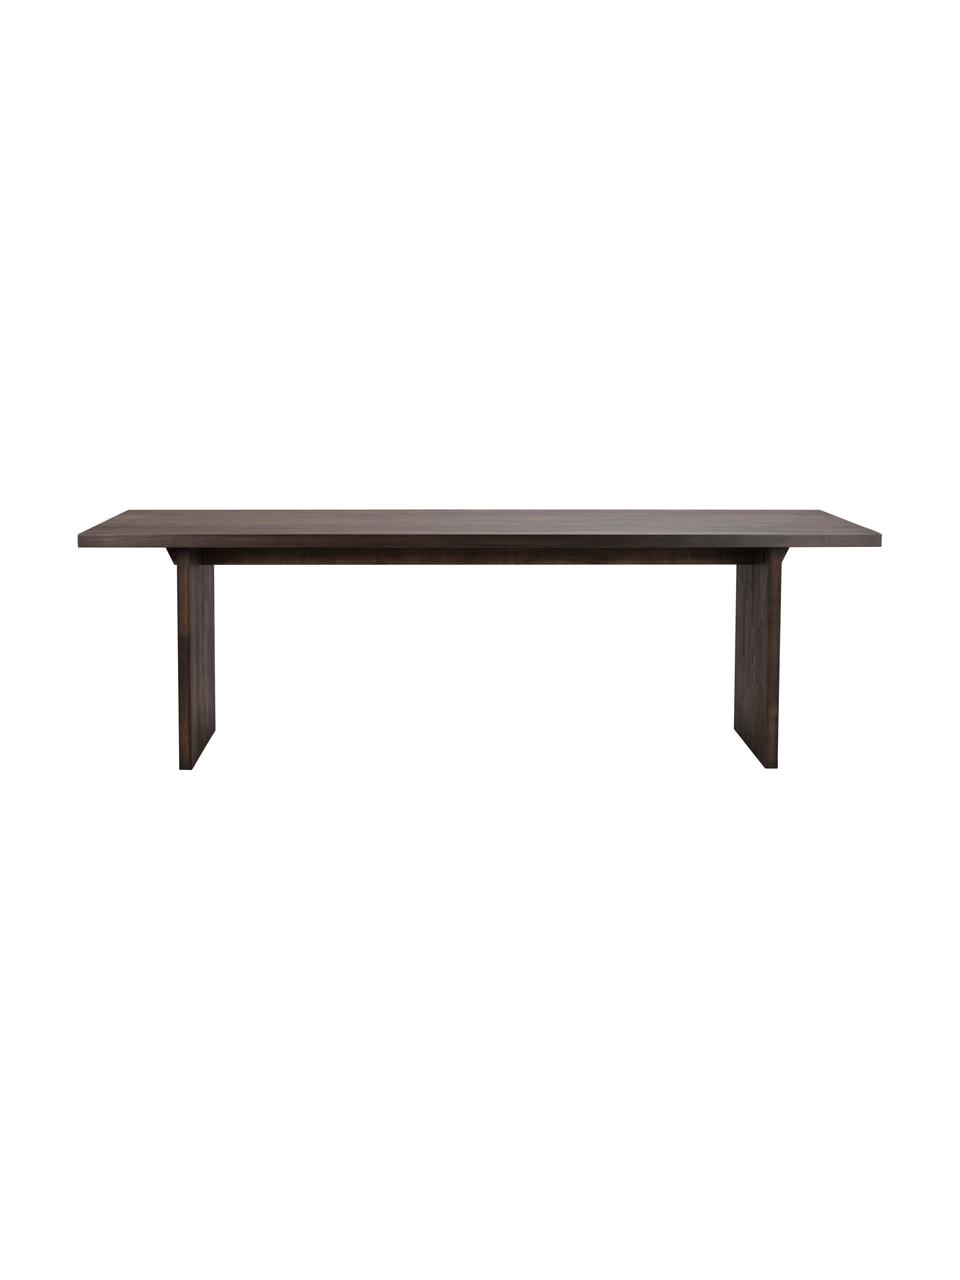 Jedálenský stôl z dubového dreva Emmett, 240 x 95 cm, Masívne dubové drevo, ošetrené olejom, s FSC certifikátom, Tmavé dubové drevo, Š 240 x H 95 cm